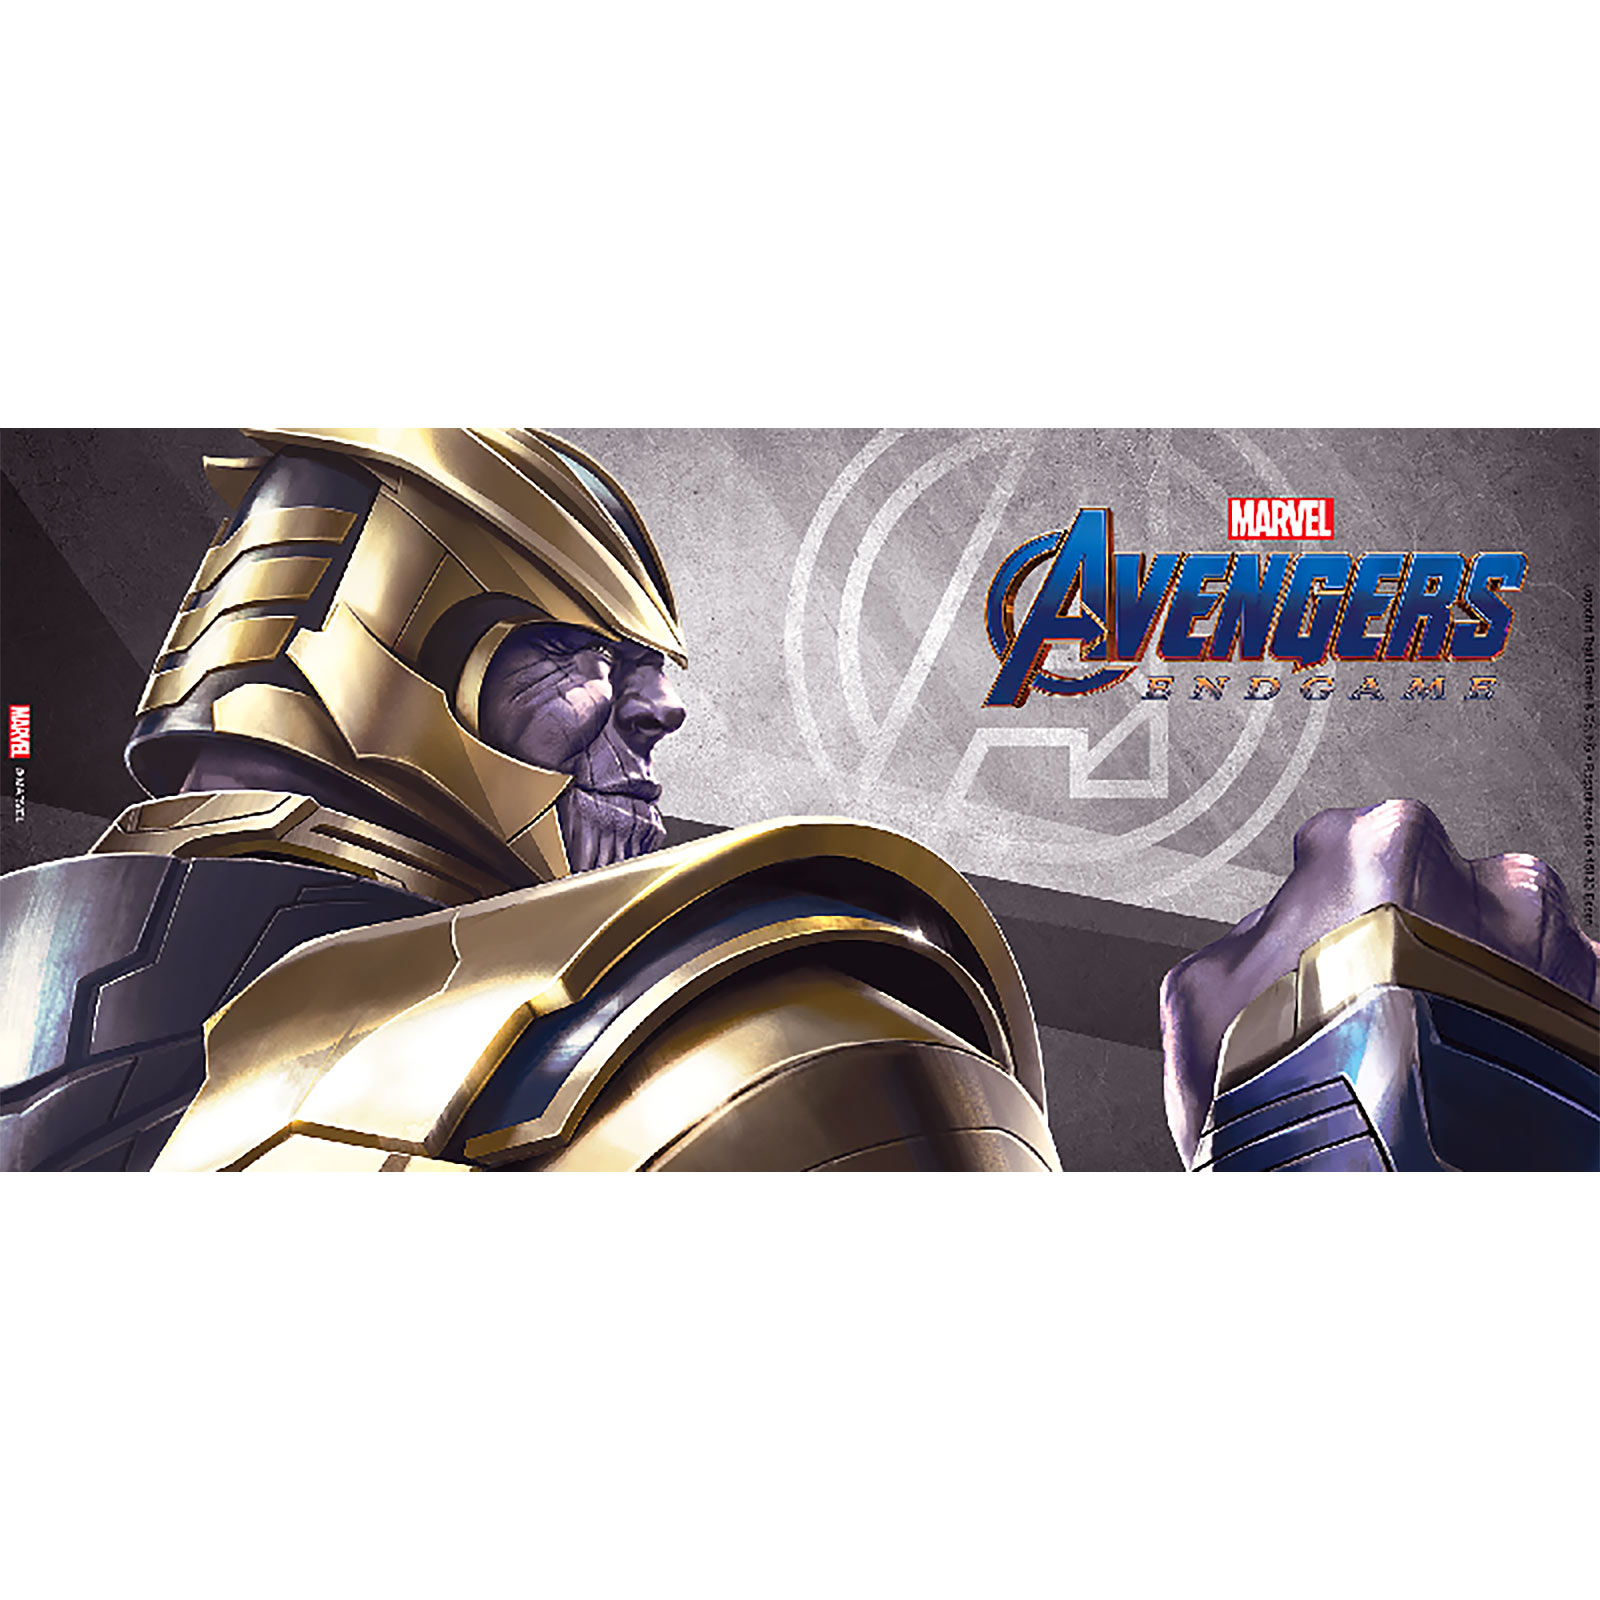 Avengers - Thanos Endgame Tasse